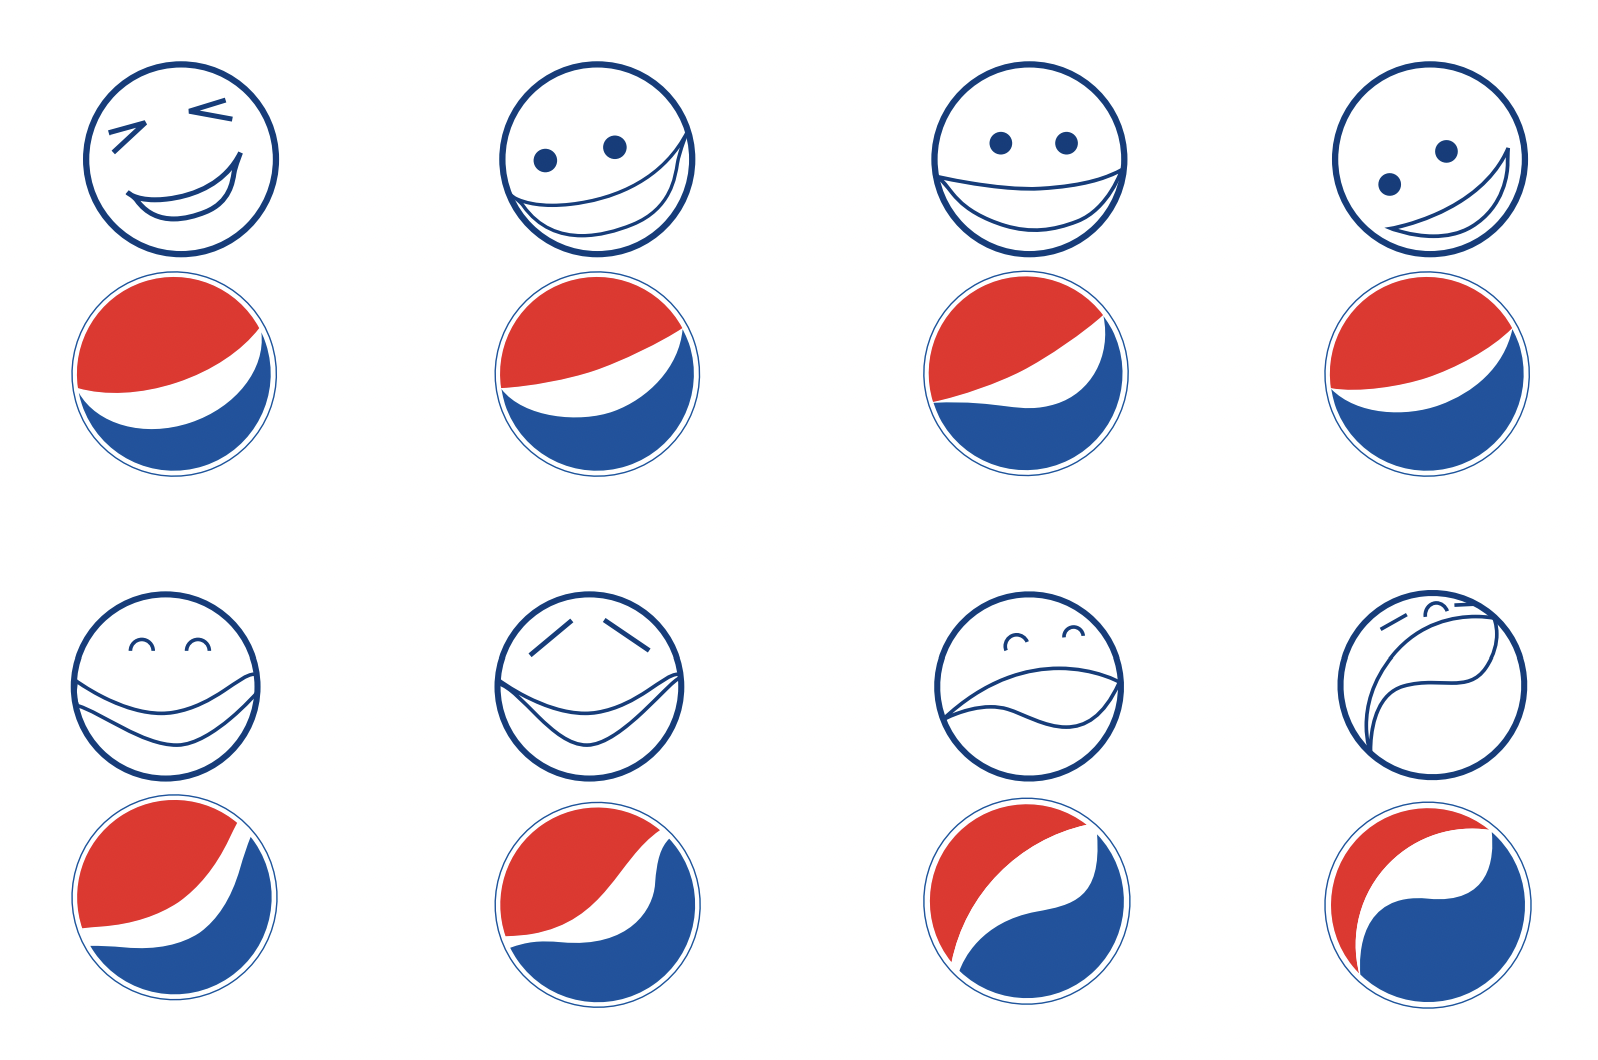 Pepsi logo design document